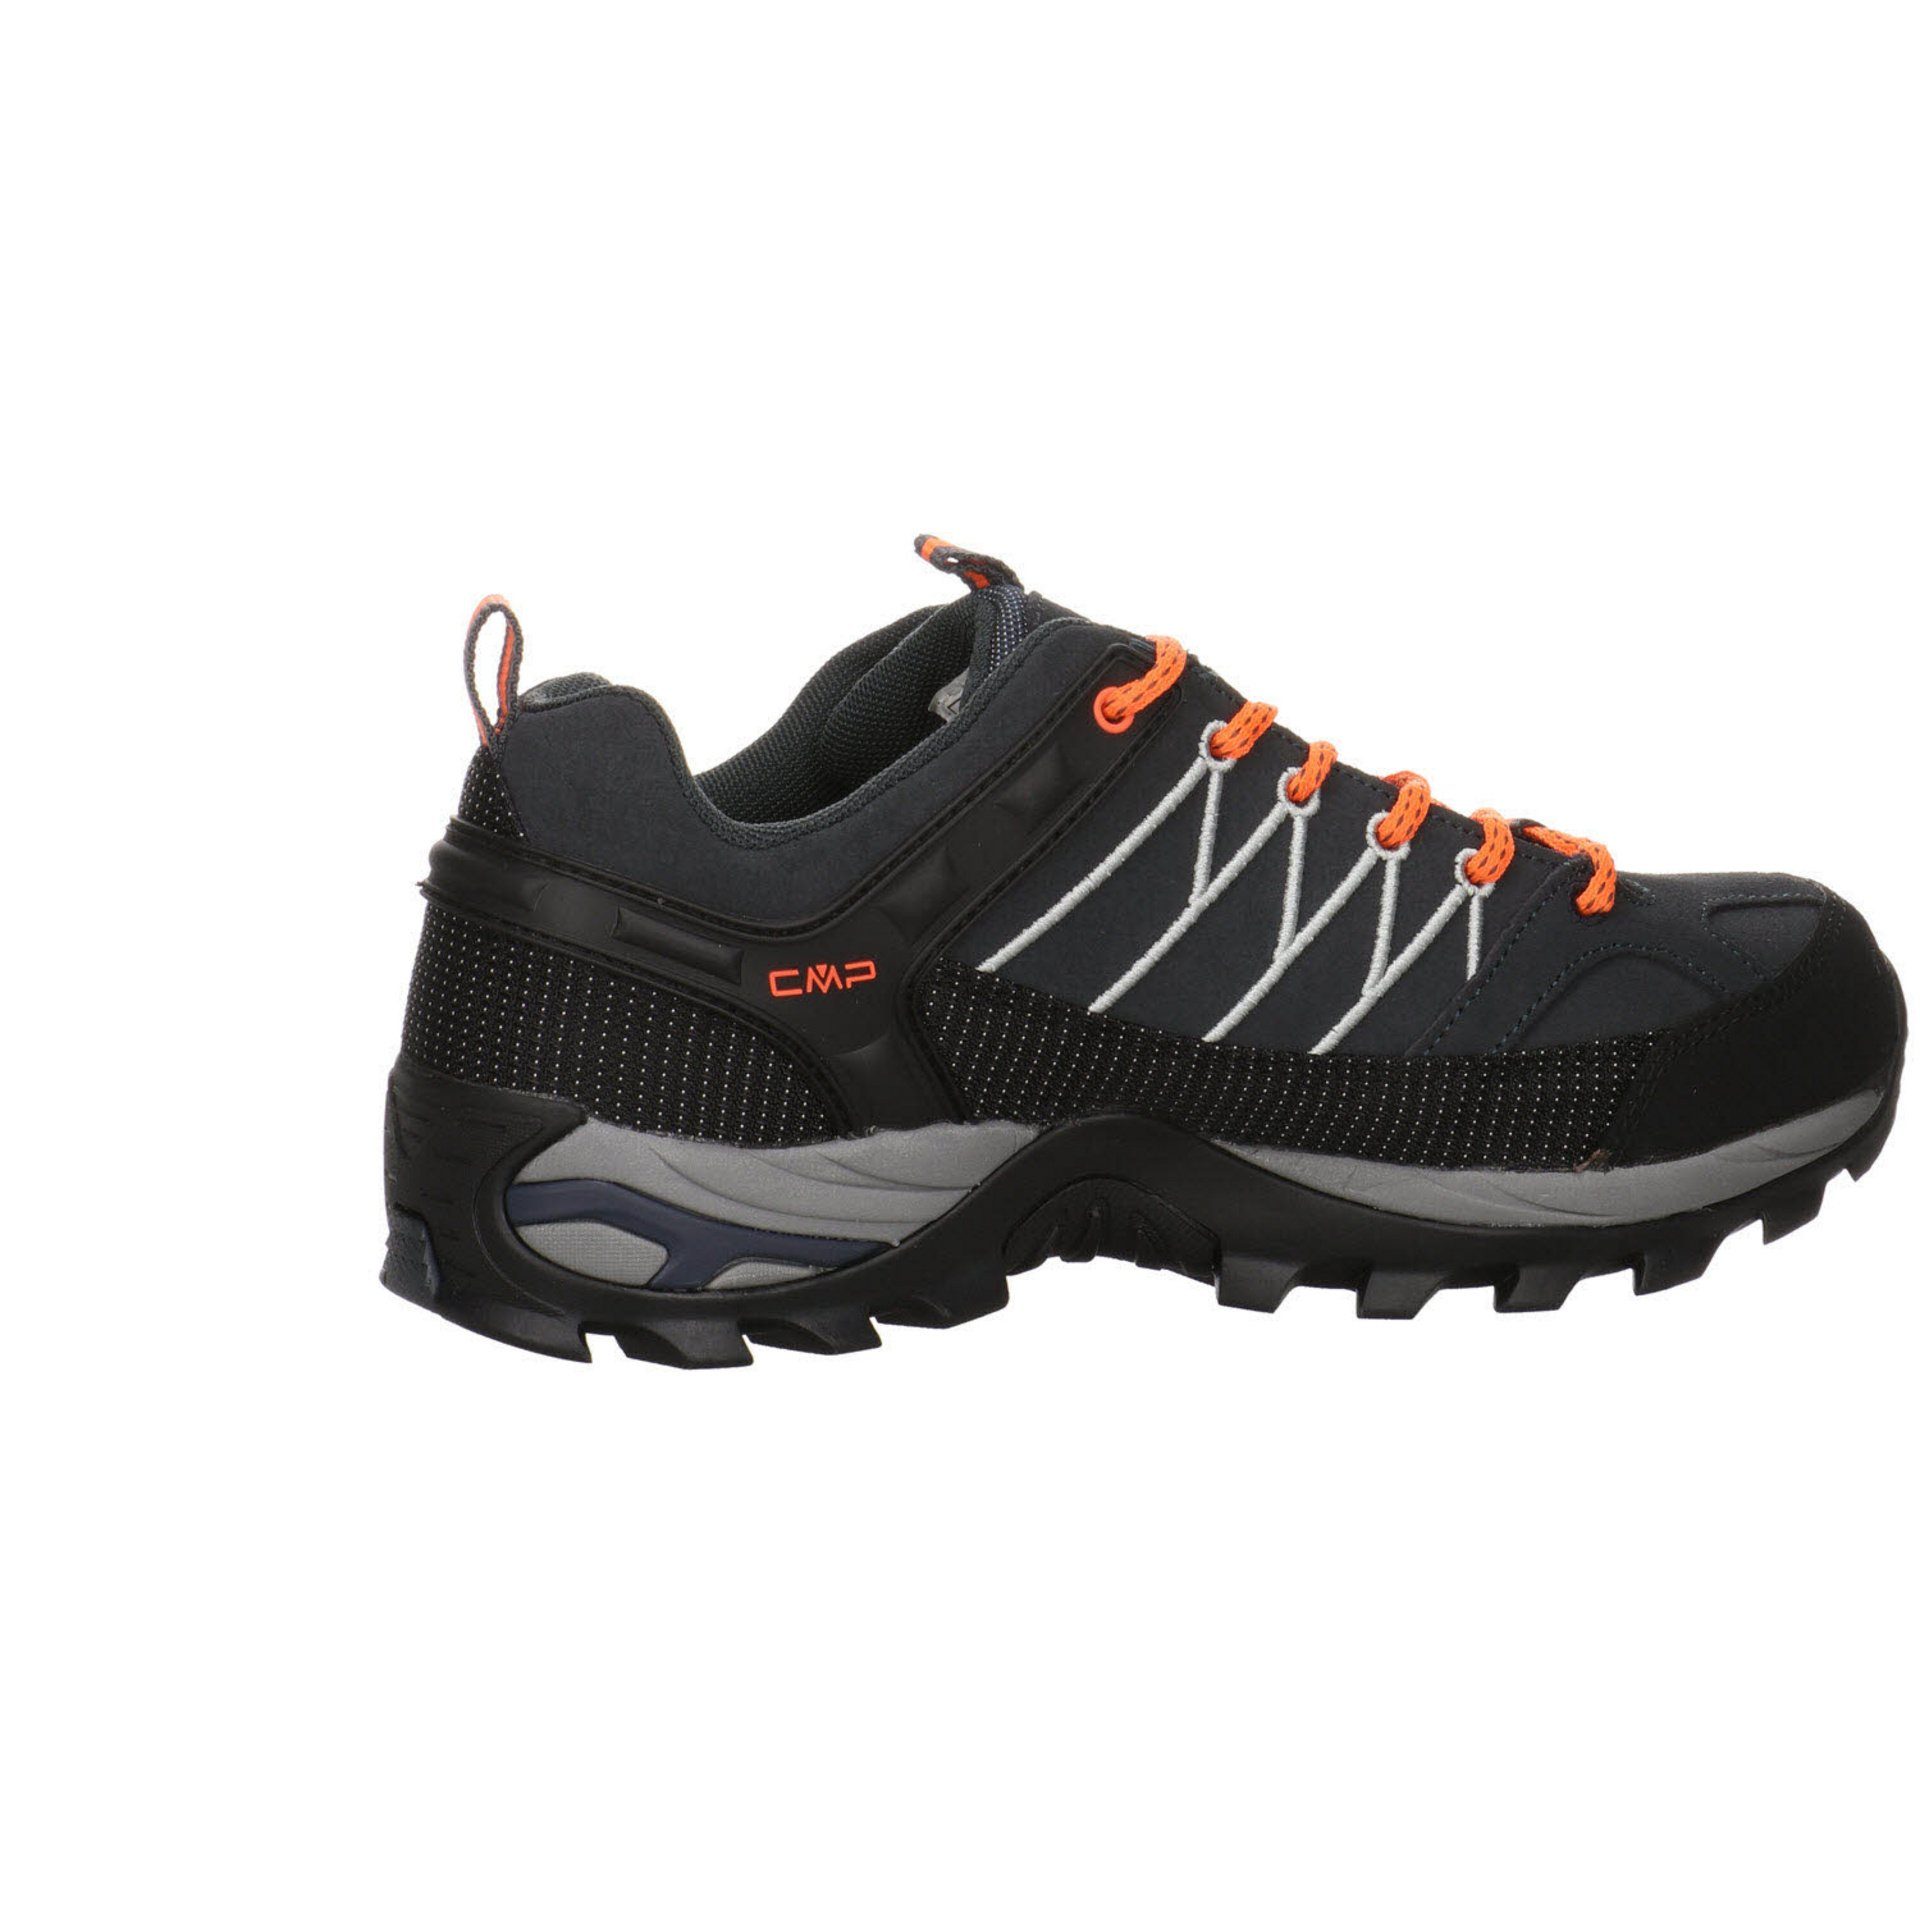 CMP Herren Outdoor grau Schuhe kombi-schwarz Outdoorschuh Low Rigel Outdoorschuh Synthetikkombination